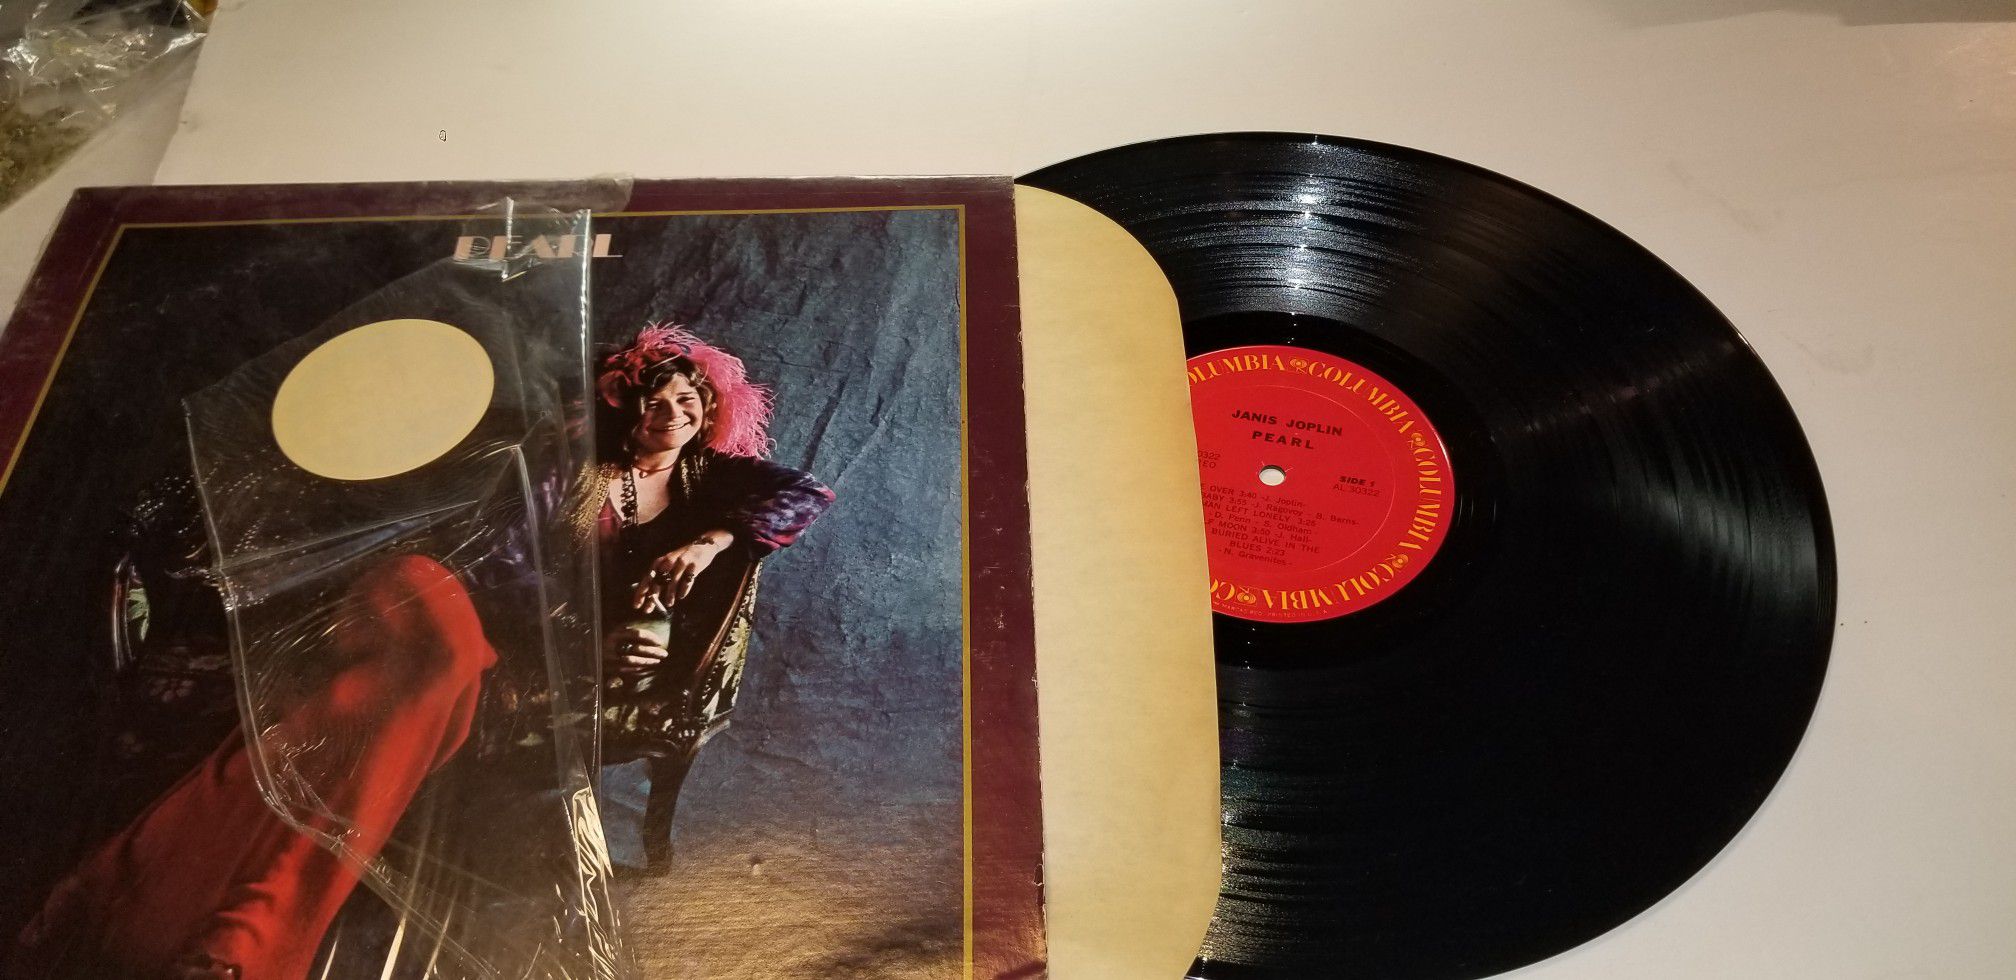 Janis Joplin/full tilt boogie Vinyl